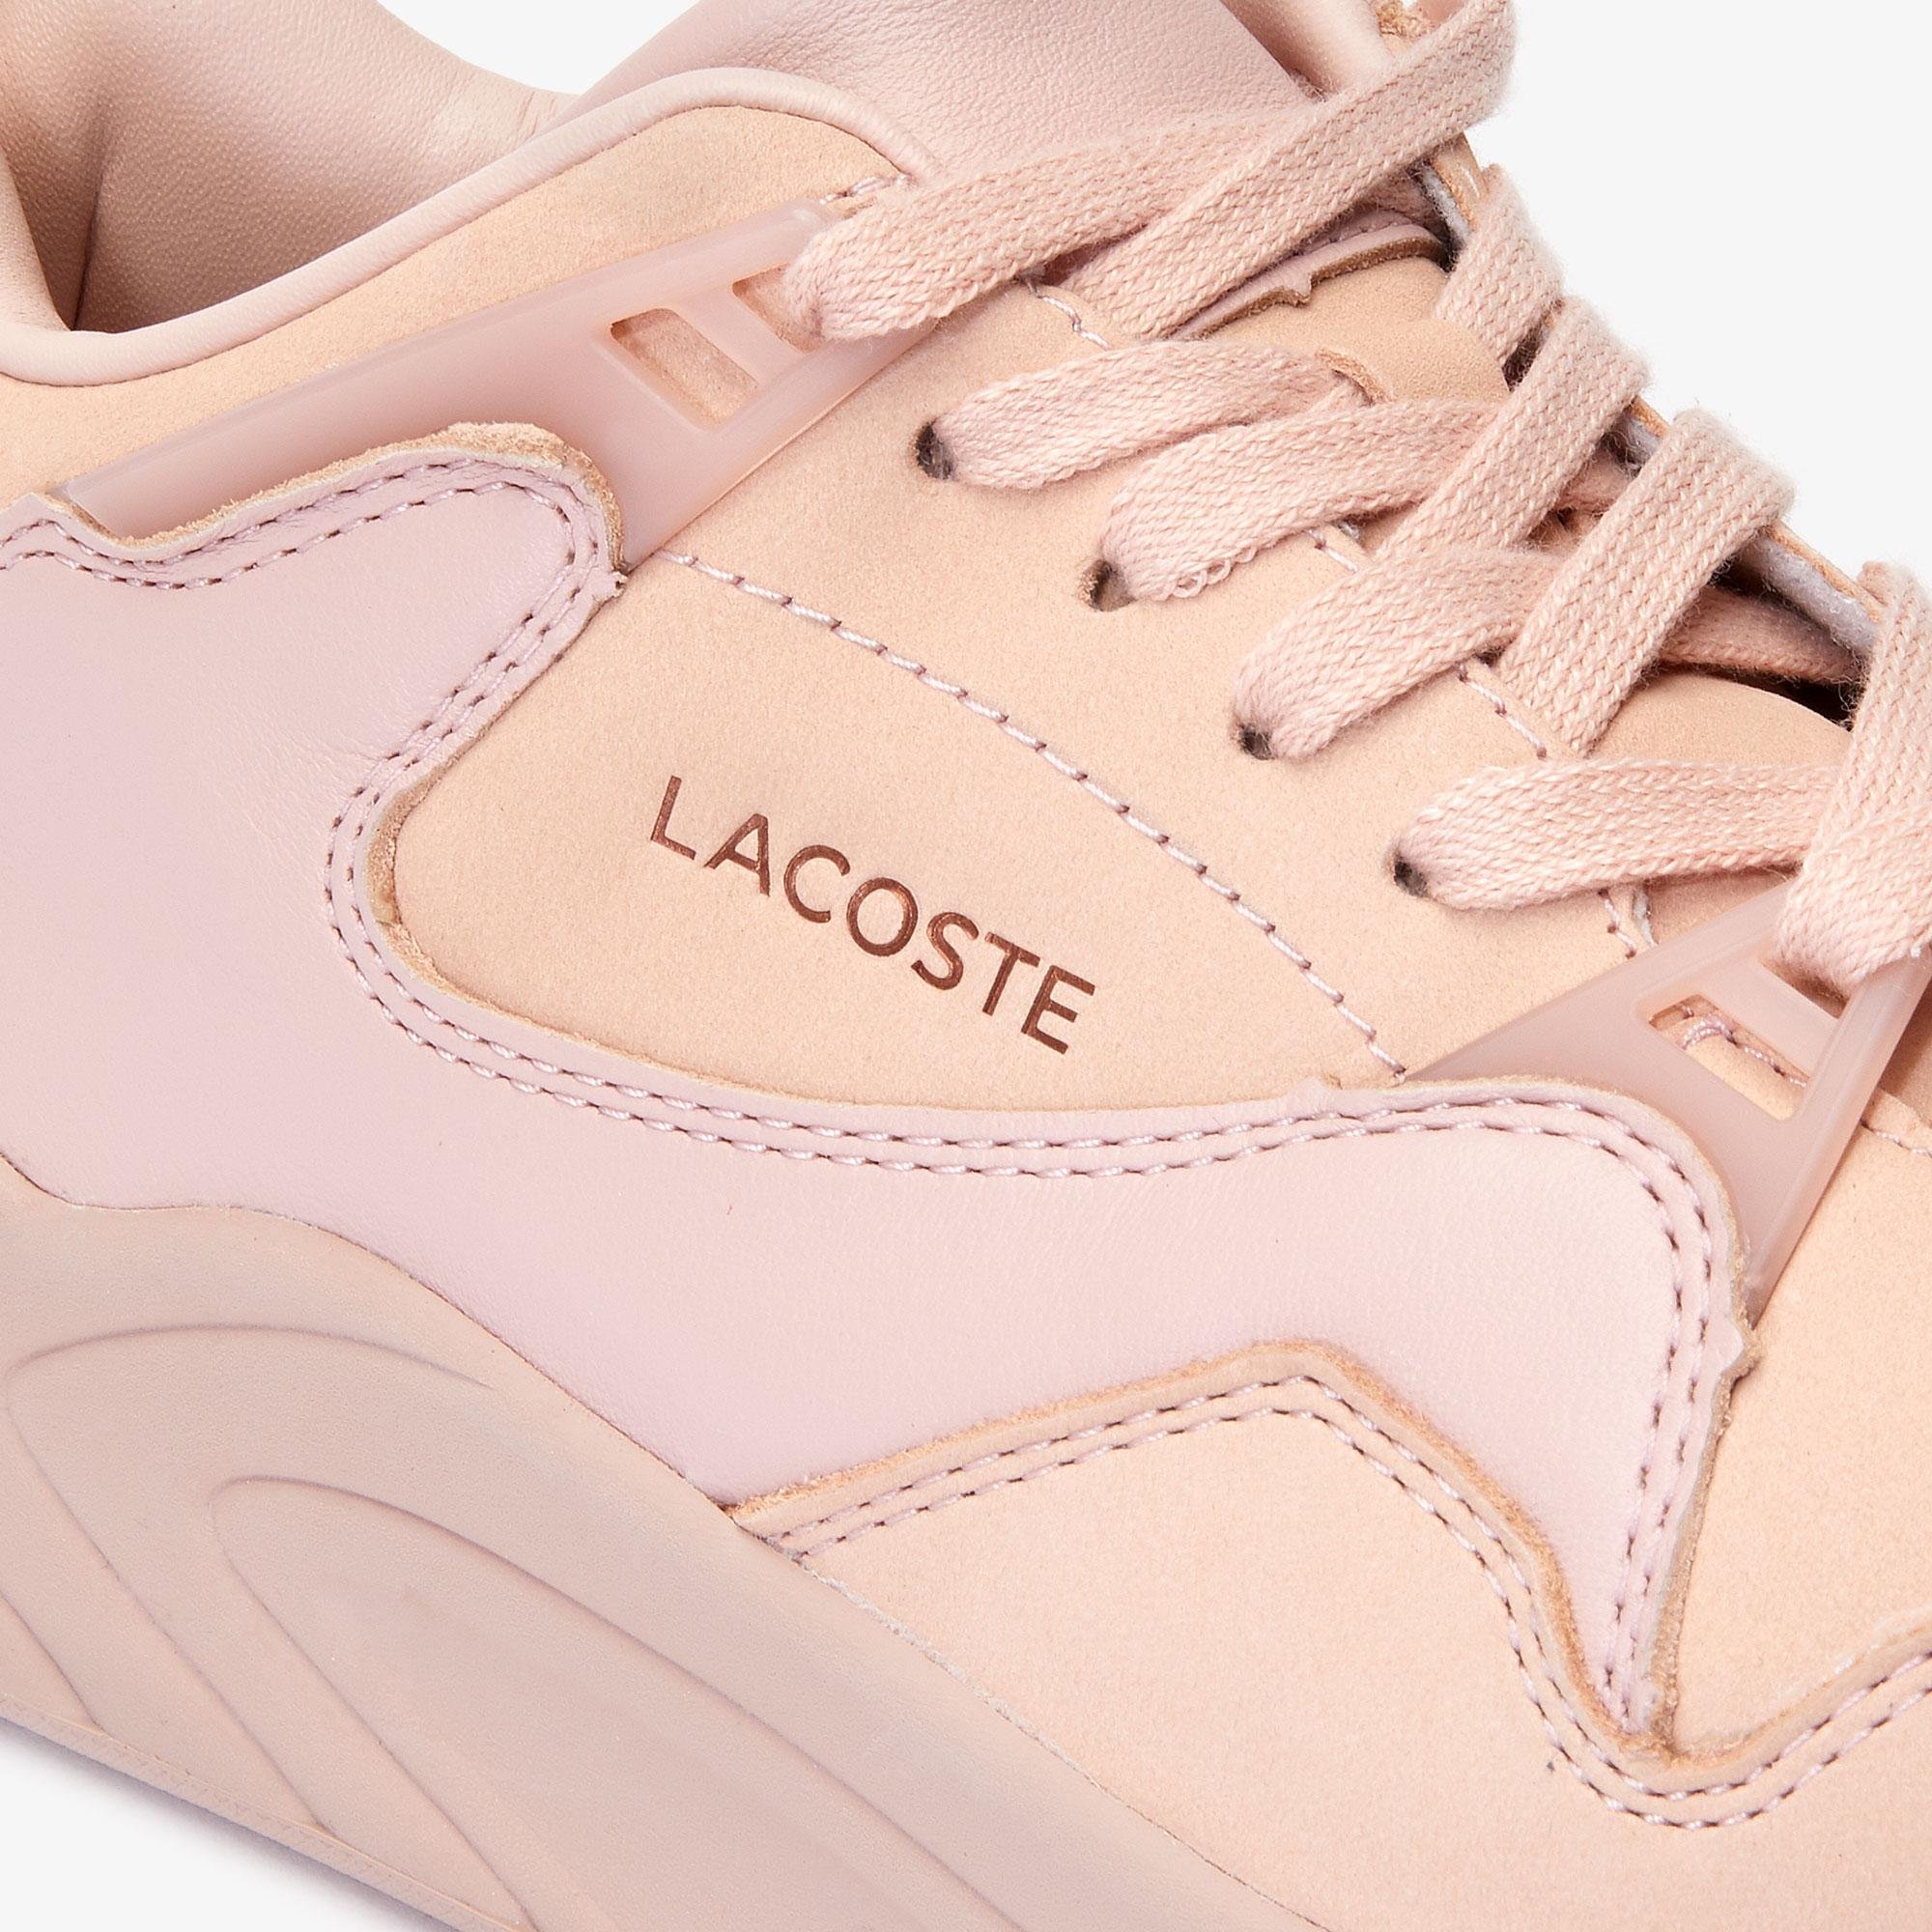 Lacoste Court Slam 419 1 Women's Sneakers